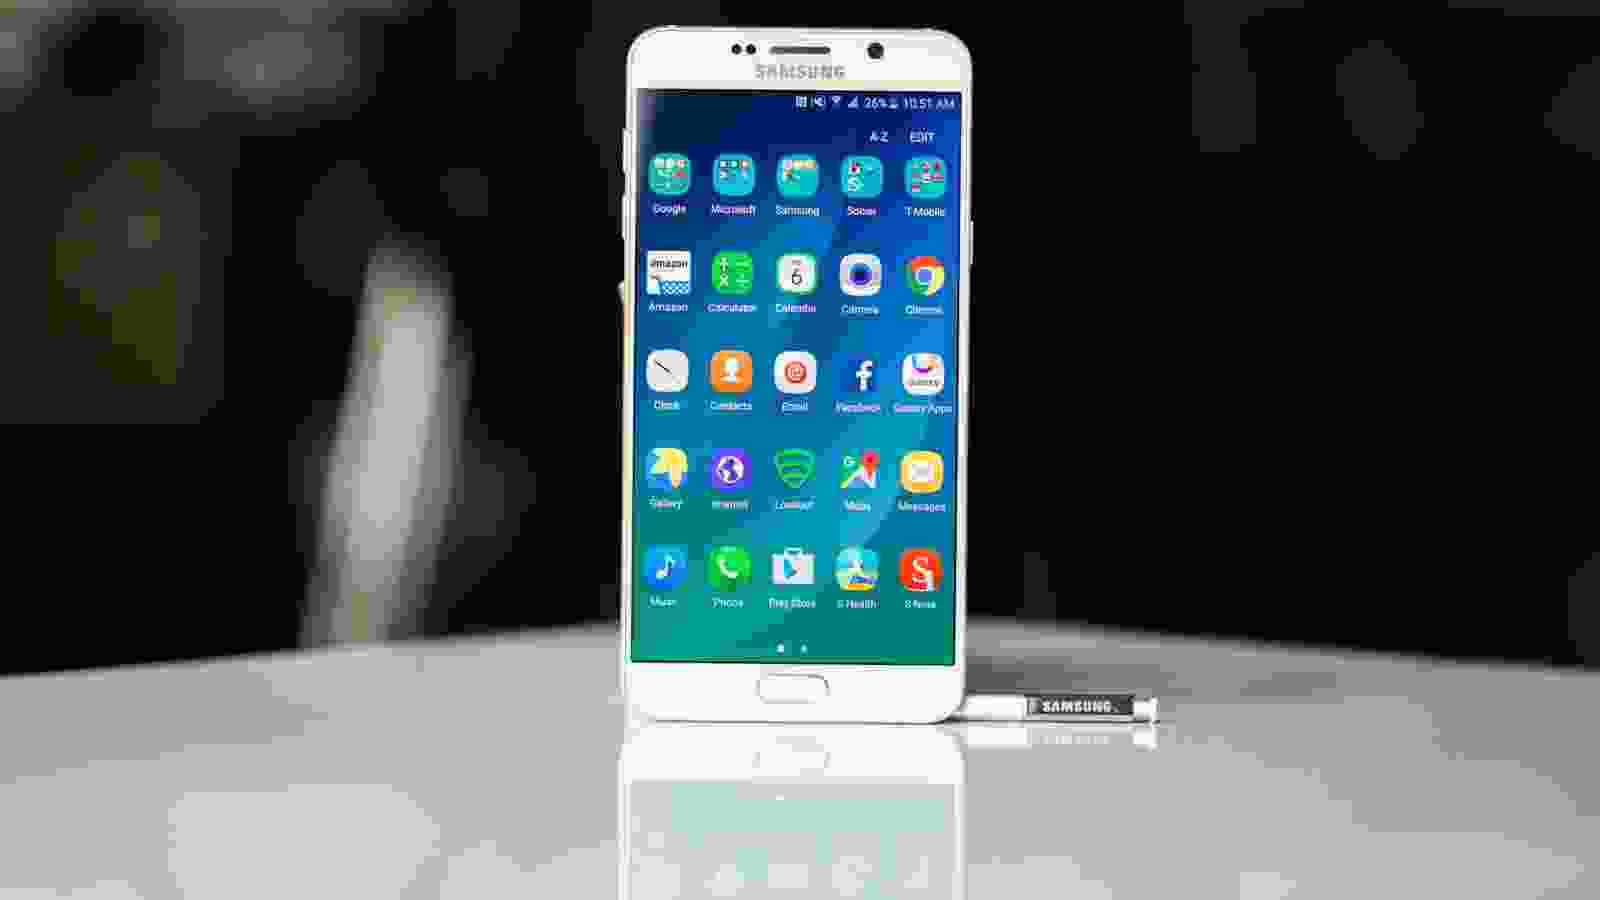 Samsung điện thoại màn hình lớn mang đến cho bạn trải nghiệm tốt hơn và thao tác trên màn hình lớn thoải mái, dễ dàng. Với thiết kế hiện đại và tính năng vượt trội, sản phẩm này đang được ưa chuộng trên thị trường. Hãy xem hình ảnh liên quan để tìm hiểu thêm về tính năng, thiết kế của sản phẩm.